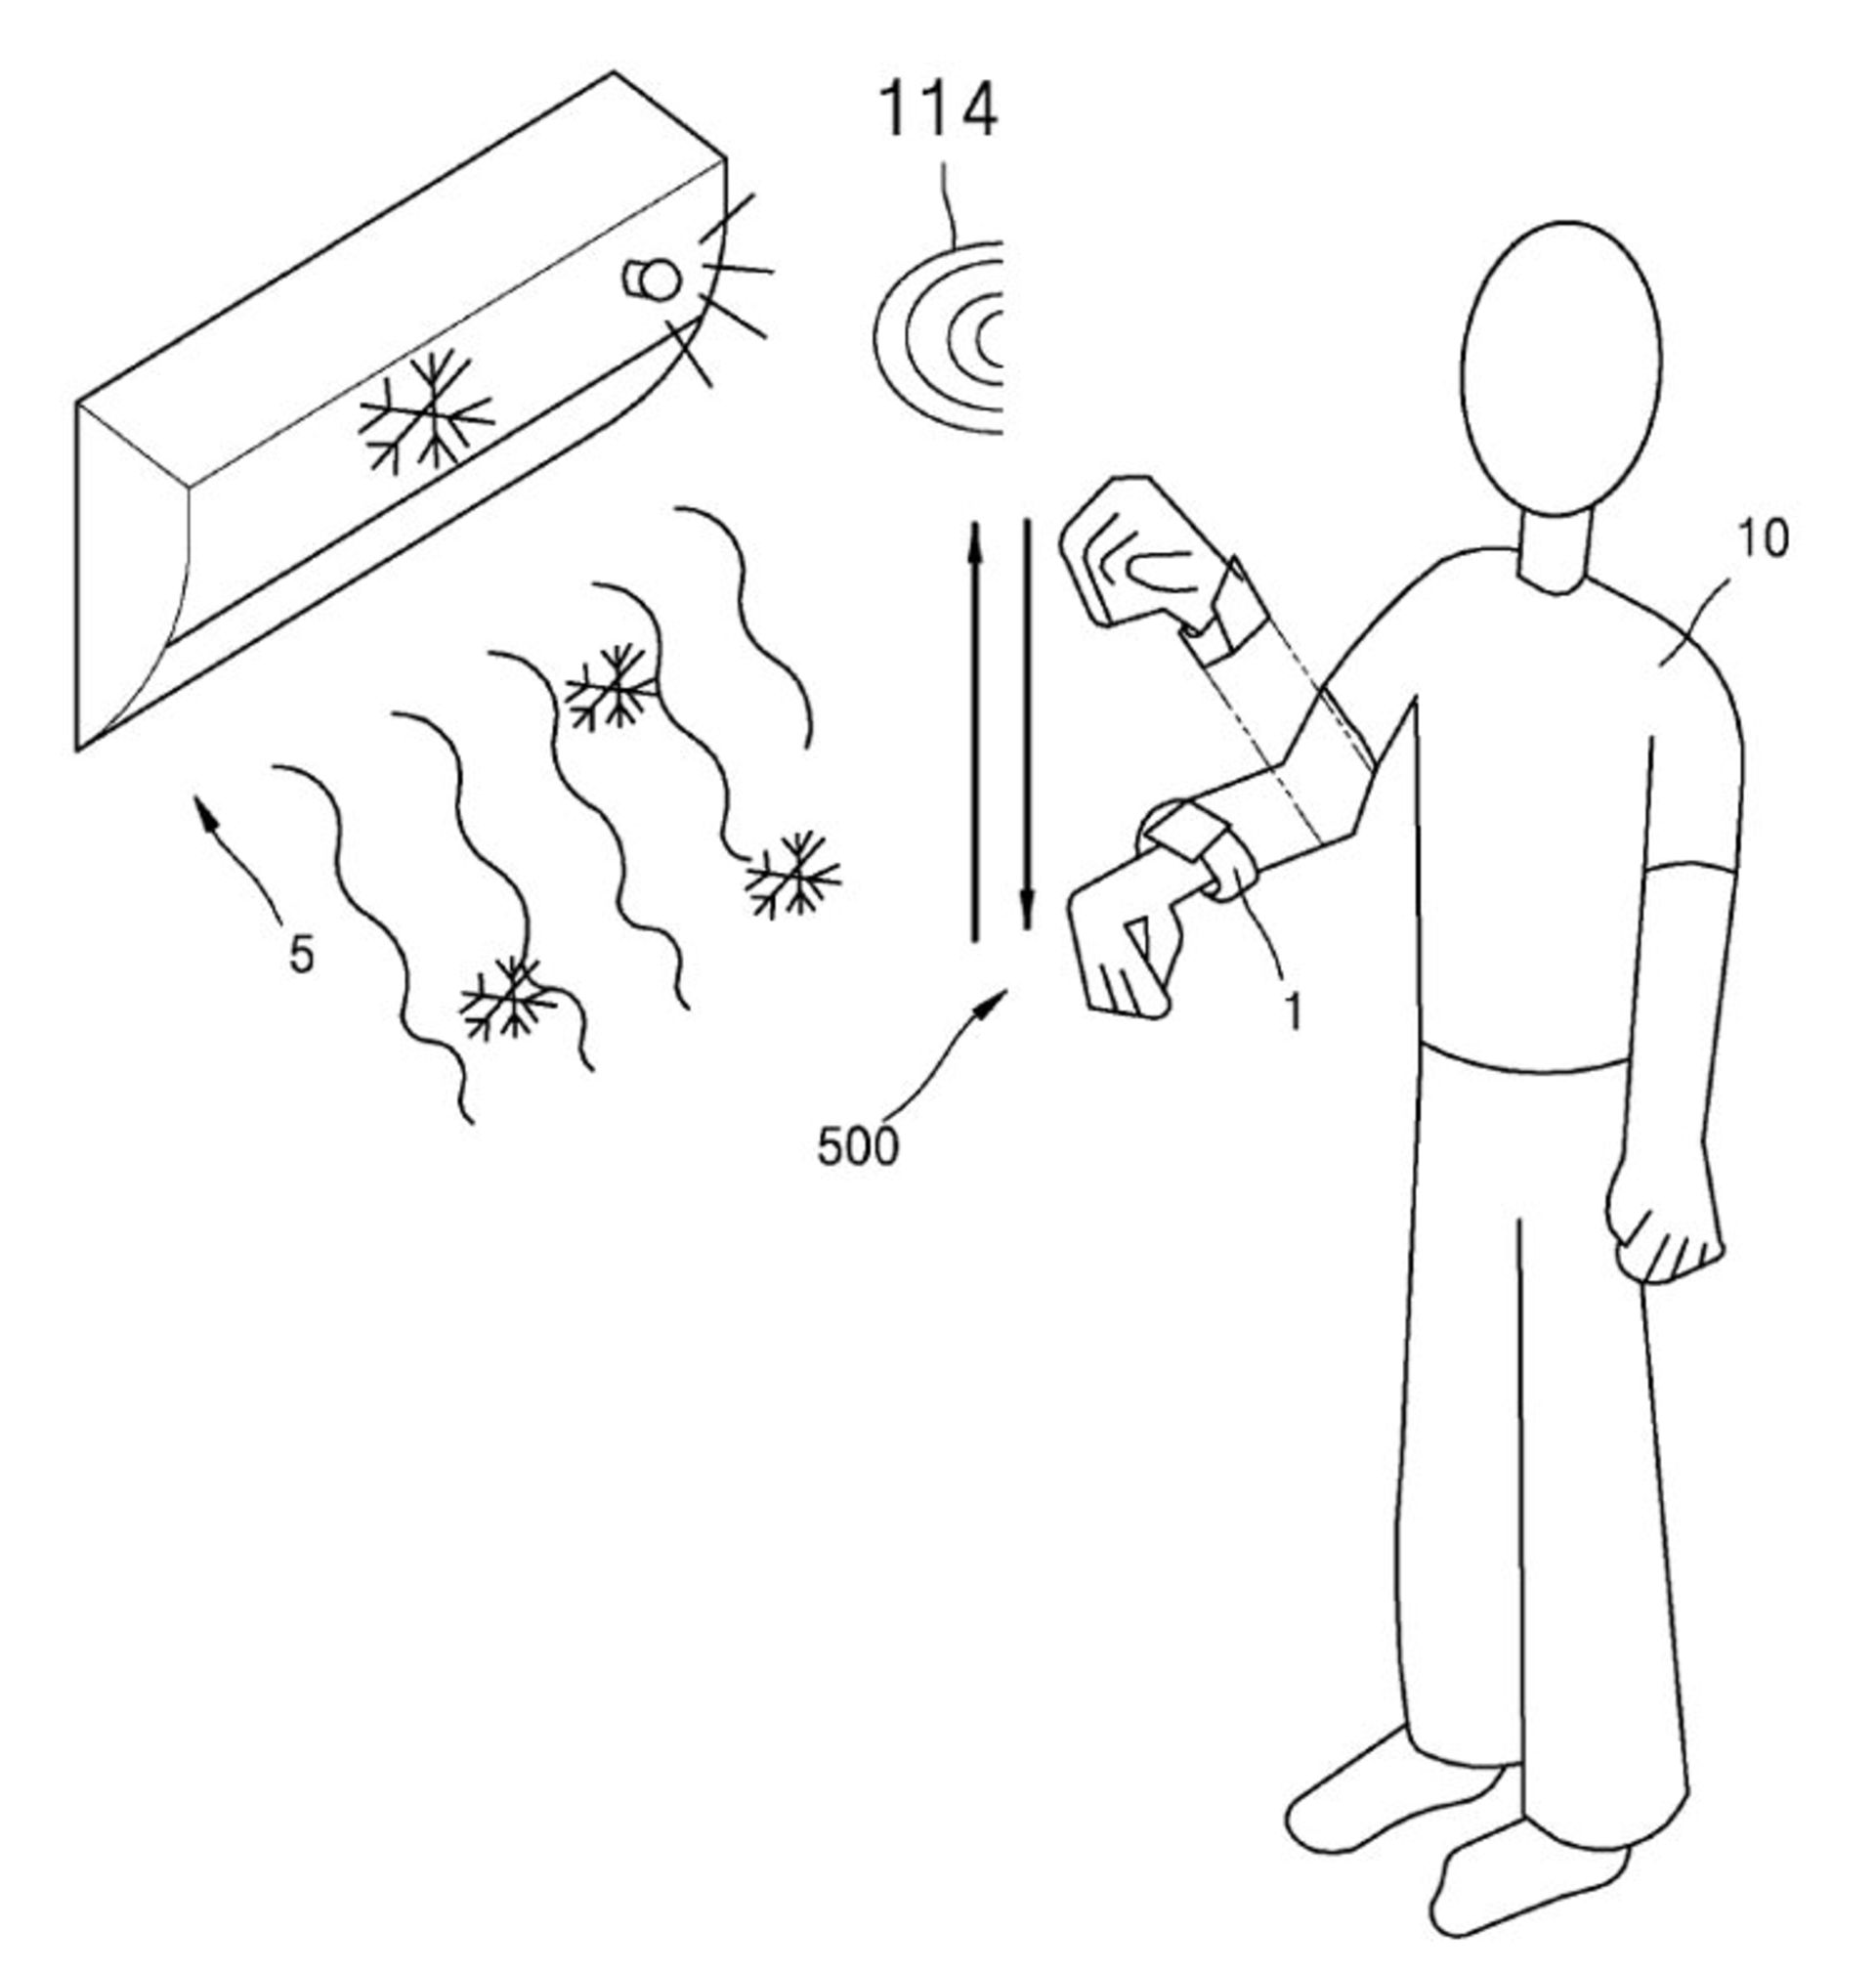 samsung watch gestures smart home patent 2 ee97d